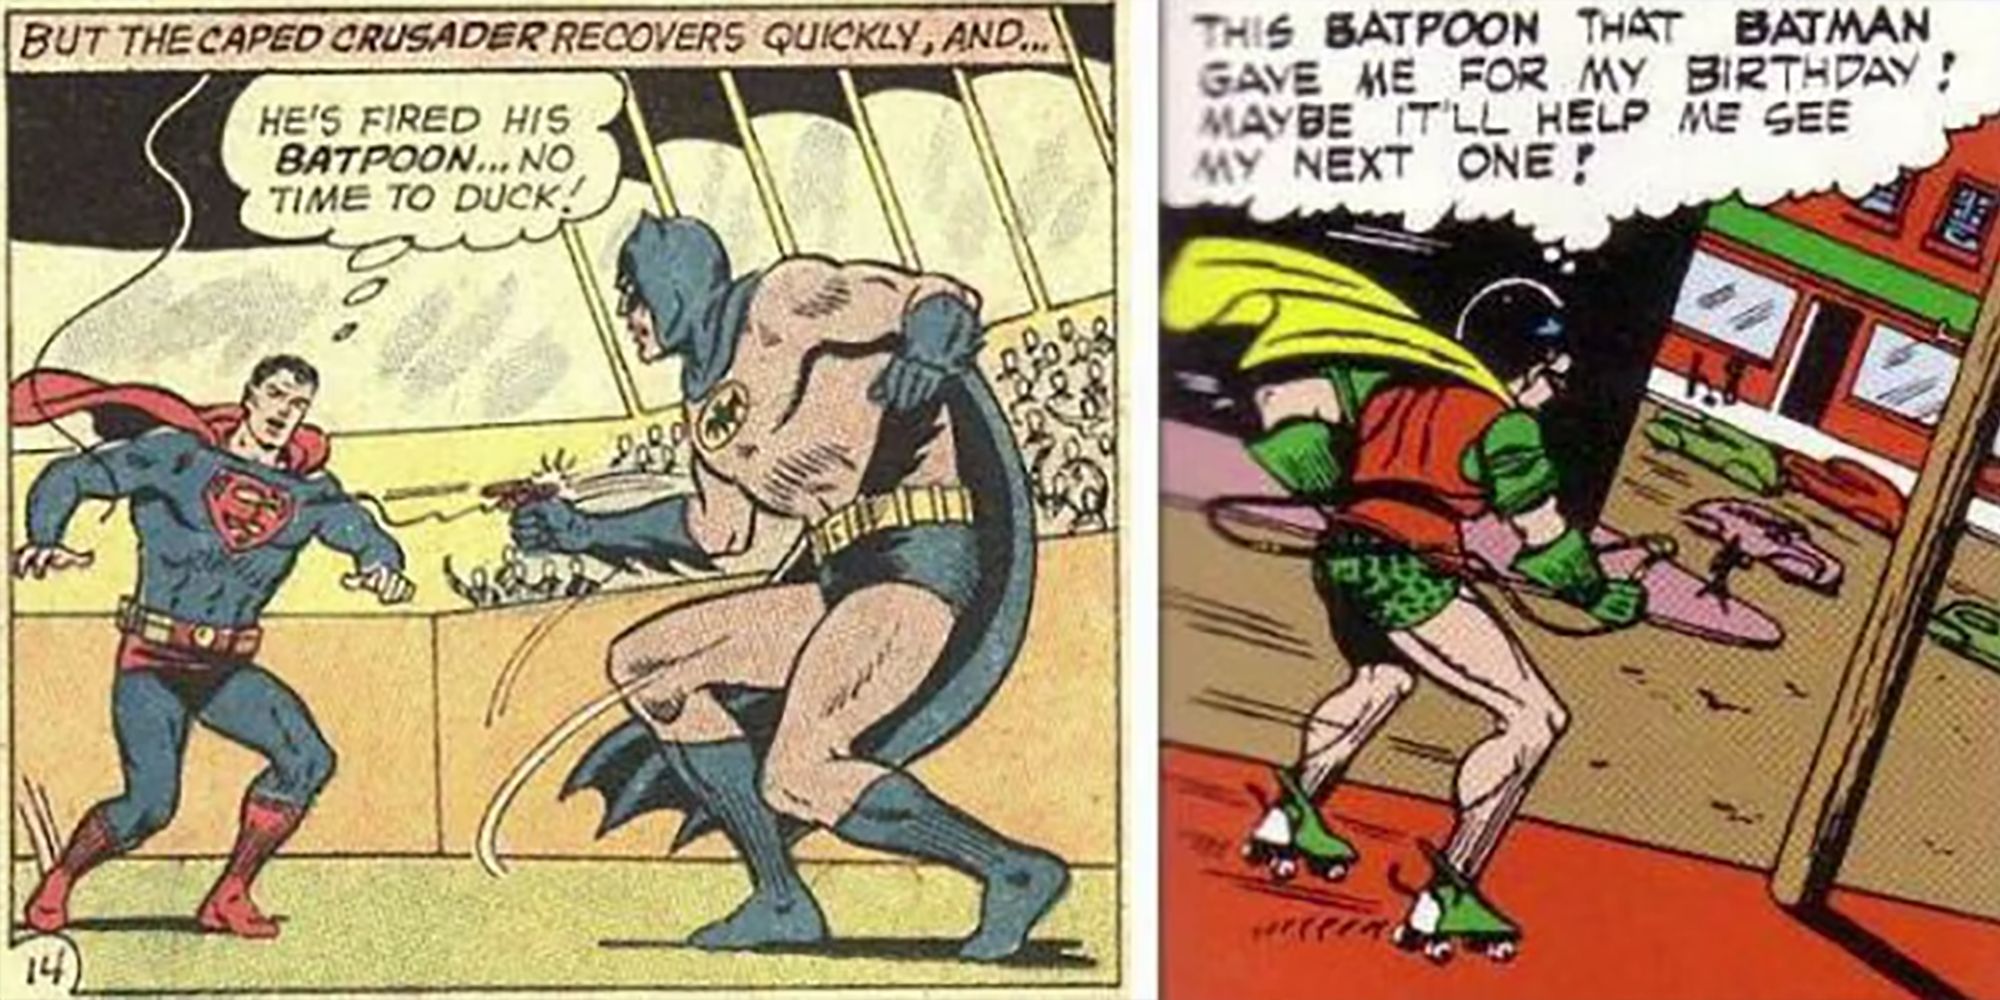 Batman's Batpoon In Action